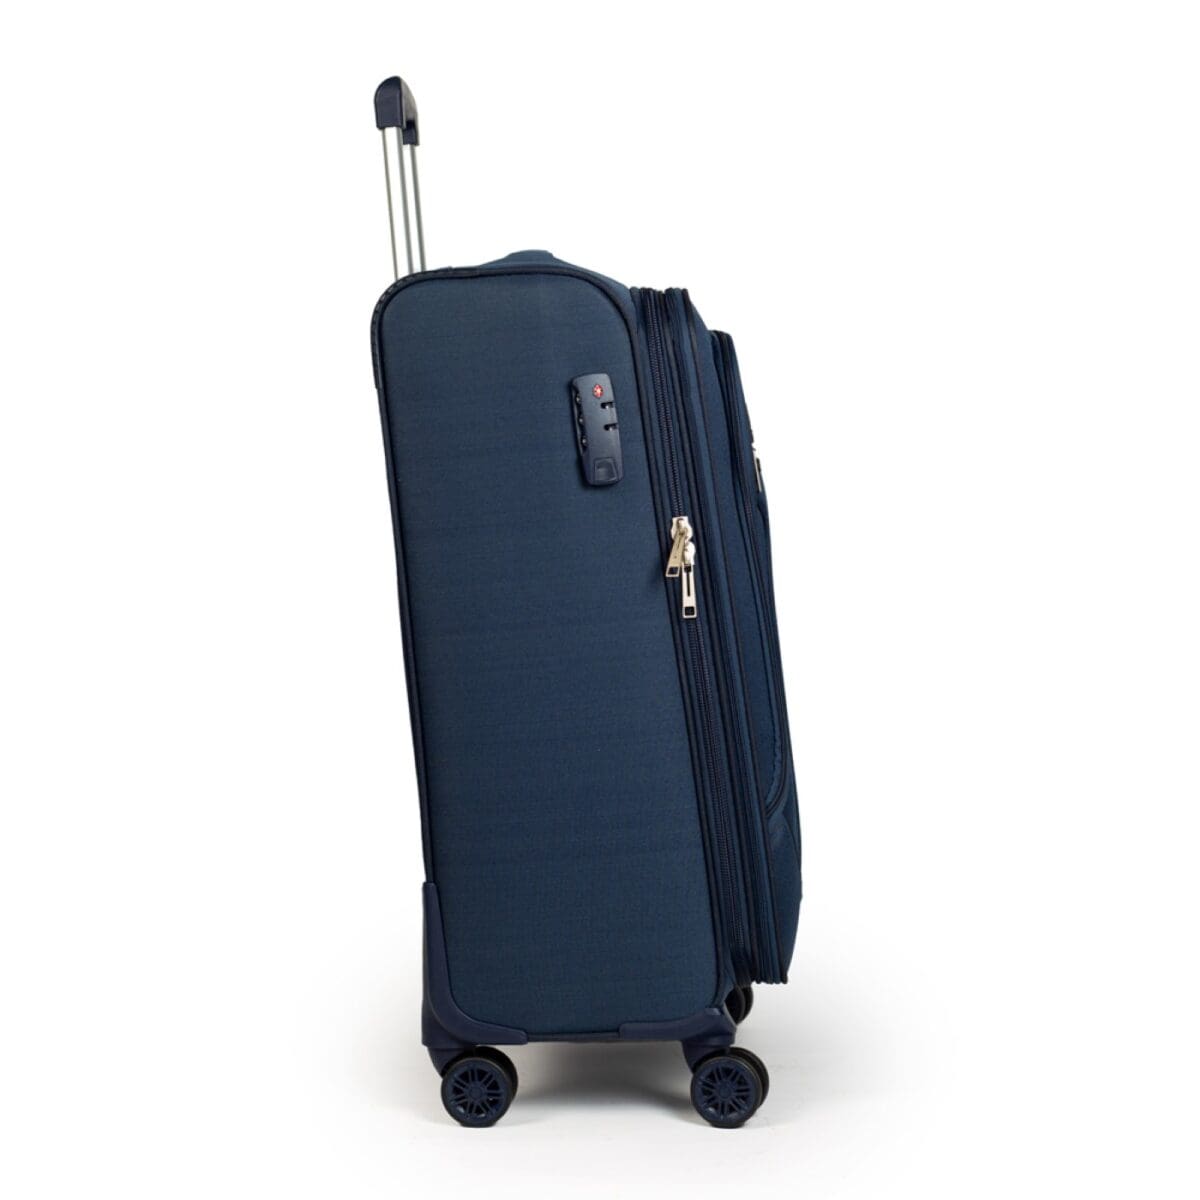 Δεξιά πλευρά βαλίτσας με κλειδαριά σε μαύρο μπλε